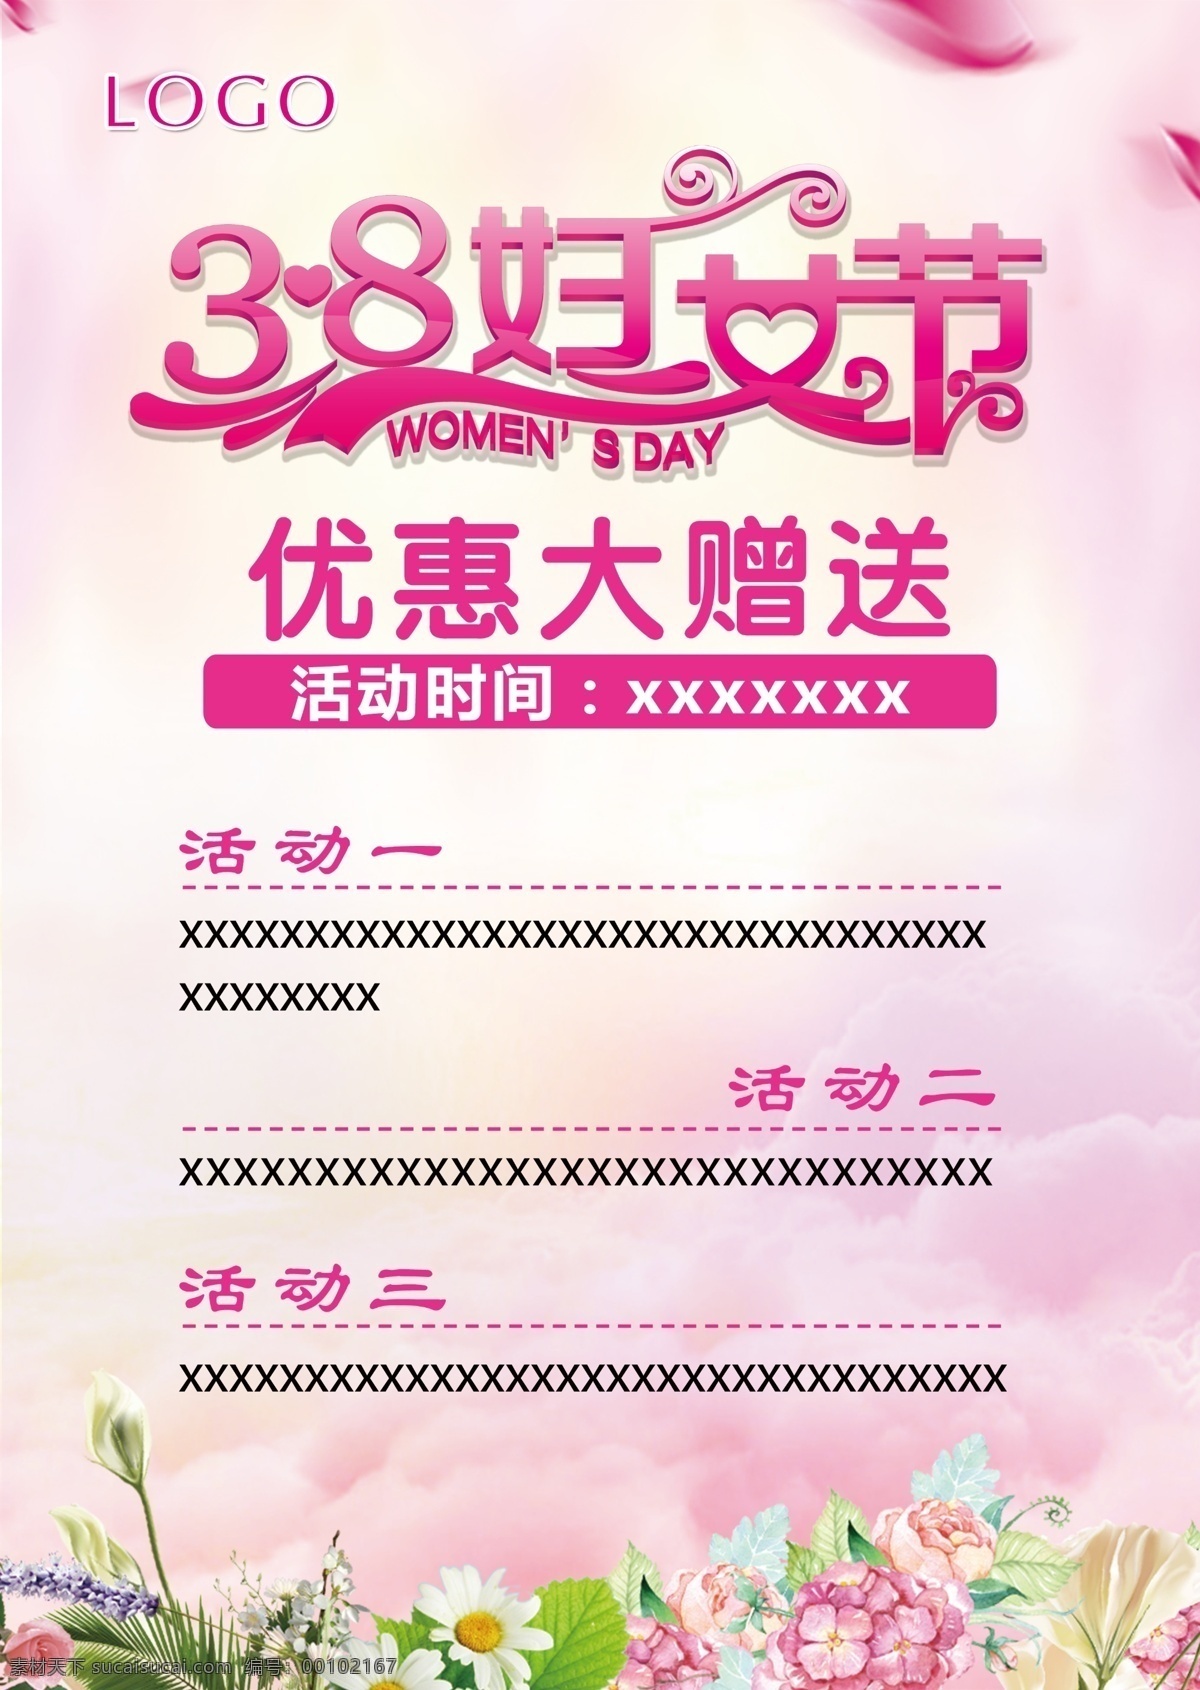 38 妇女节 活动 海报 艺术字体 花瓣 小草 粉色 女神节